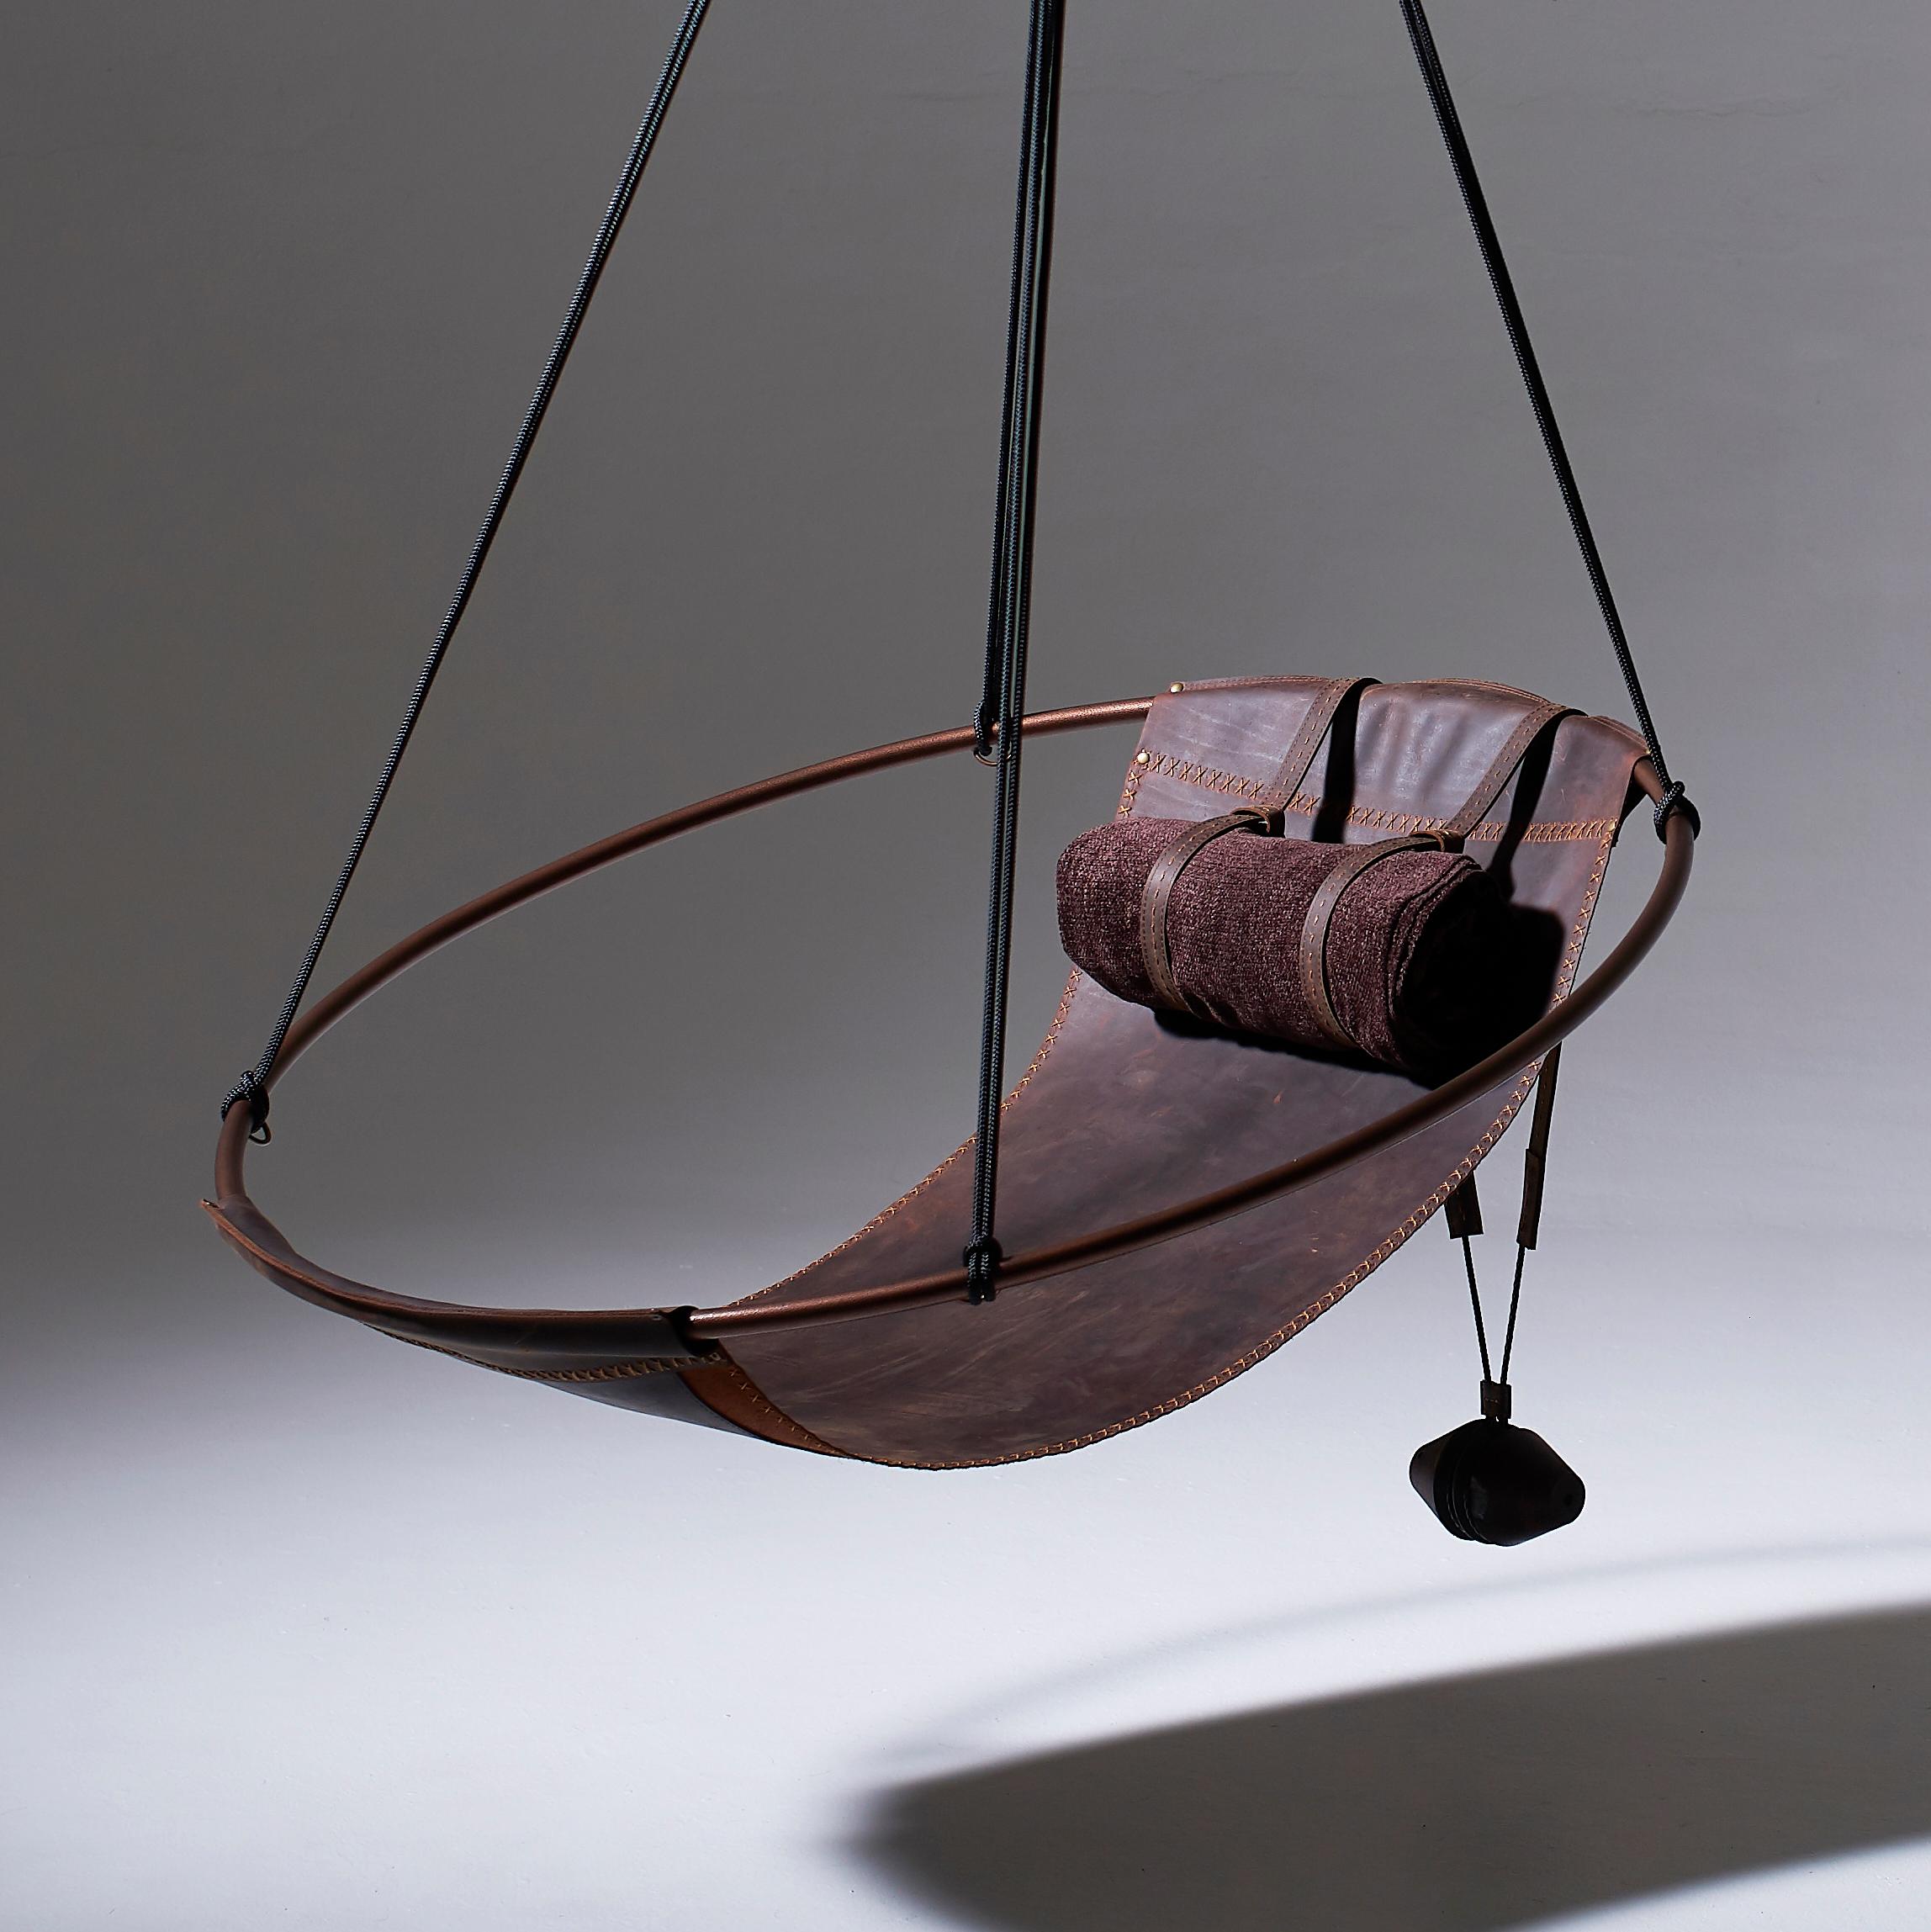 Dépouillé de tout excès, ce fauteuil suspendu présente un cadre circulaire dans lequel les feuilles de cuir ou de tissu pendent librement, pour créer une expérience élégante, sexy et ô combien confortable. Les lignes épurées et la légèreté de cette